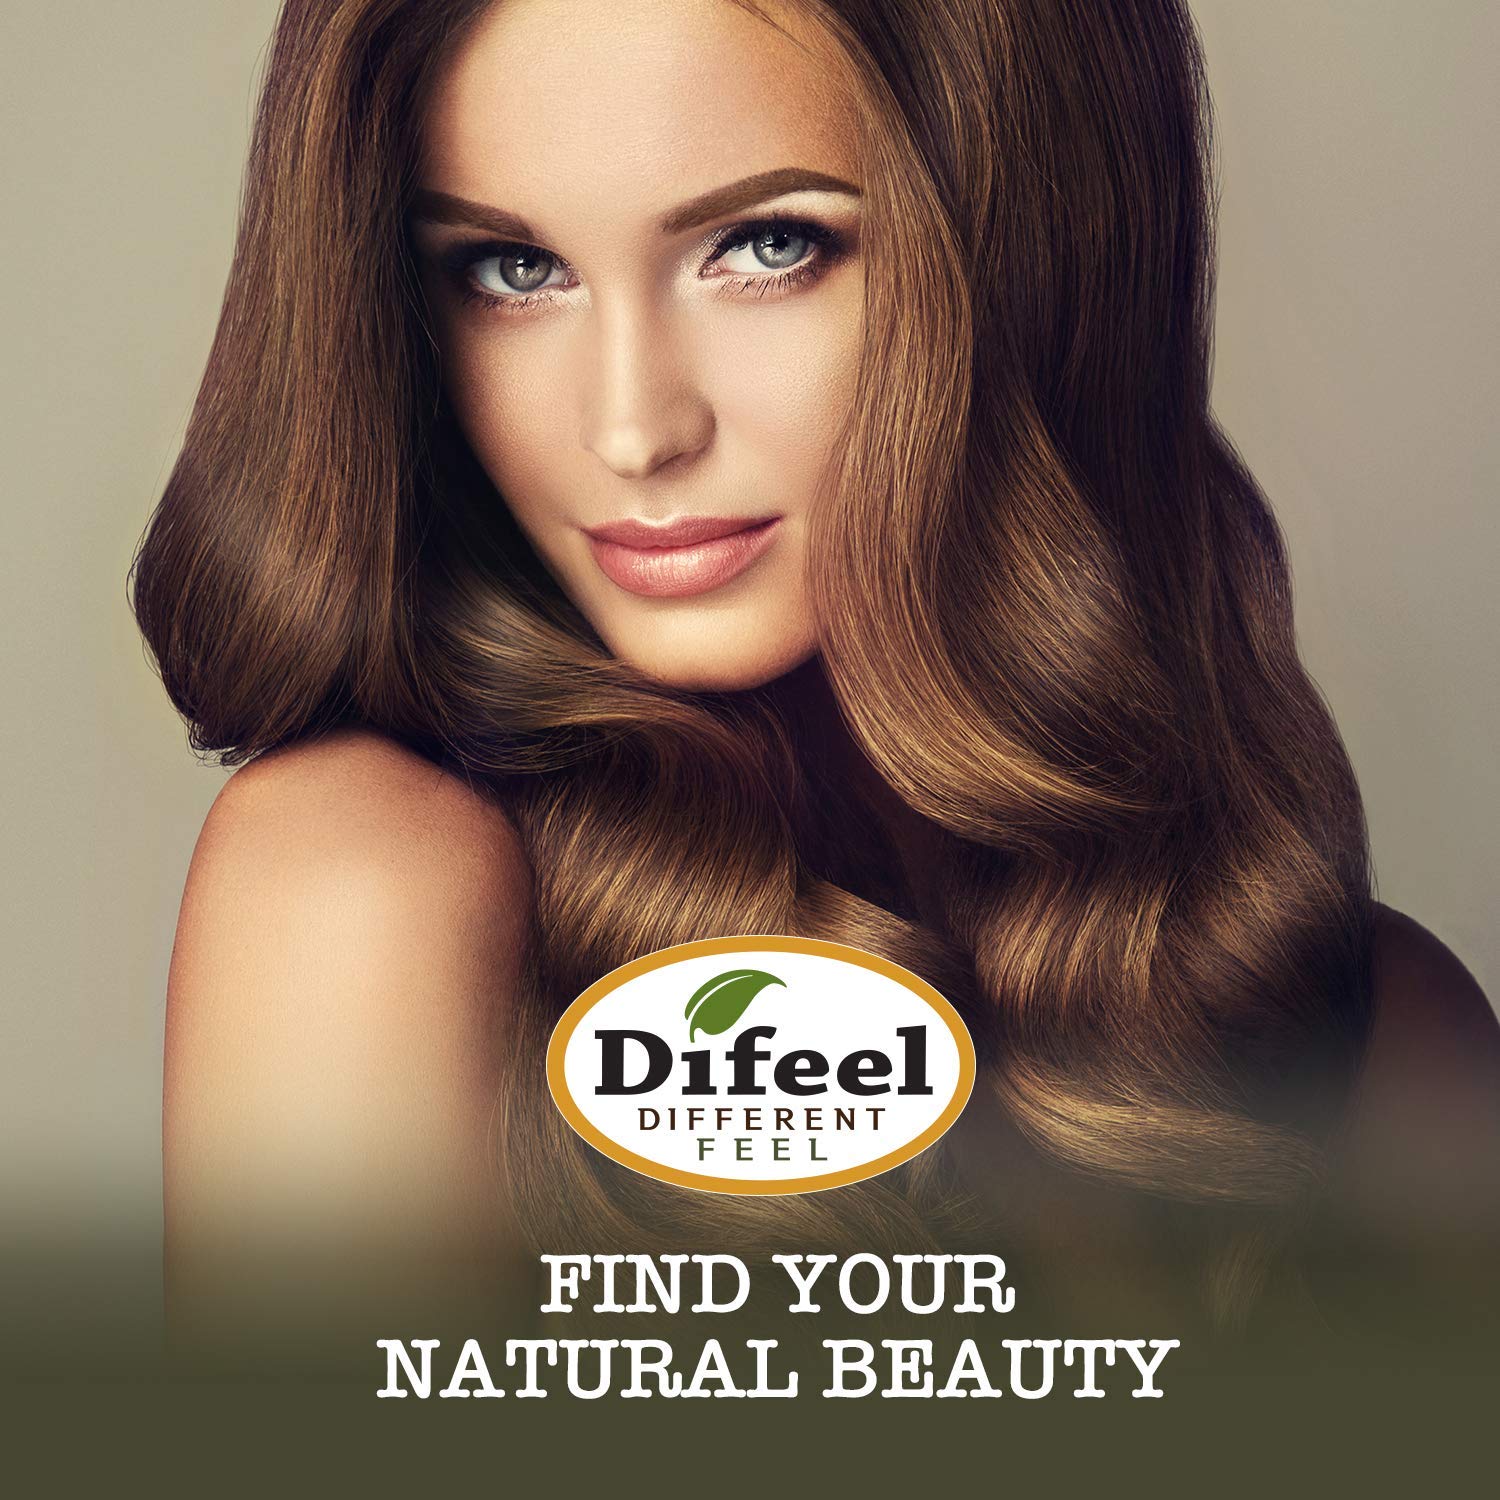 Difeel Premium Natural Hair Oil - Tea Tree Oil for Dry Scalp 7.1 Ounce